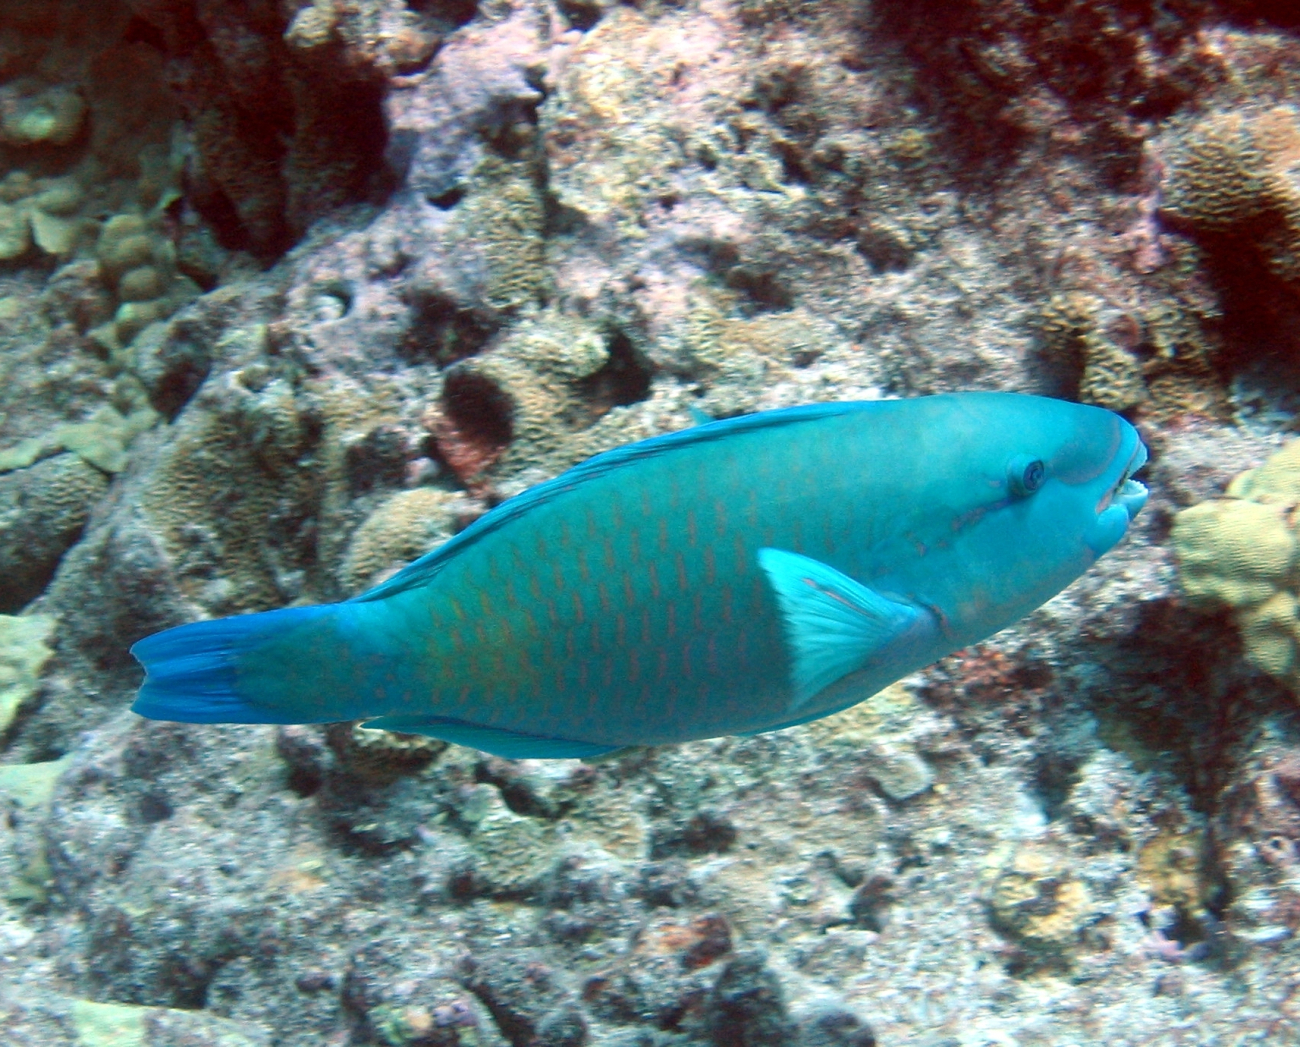 Parrotfish (Chlorurus perspicillatus)